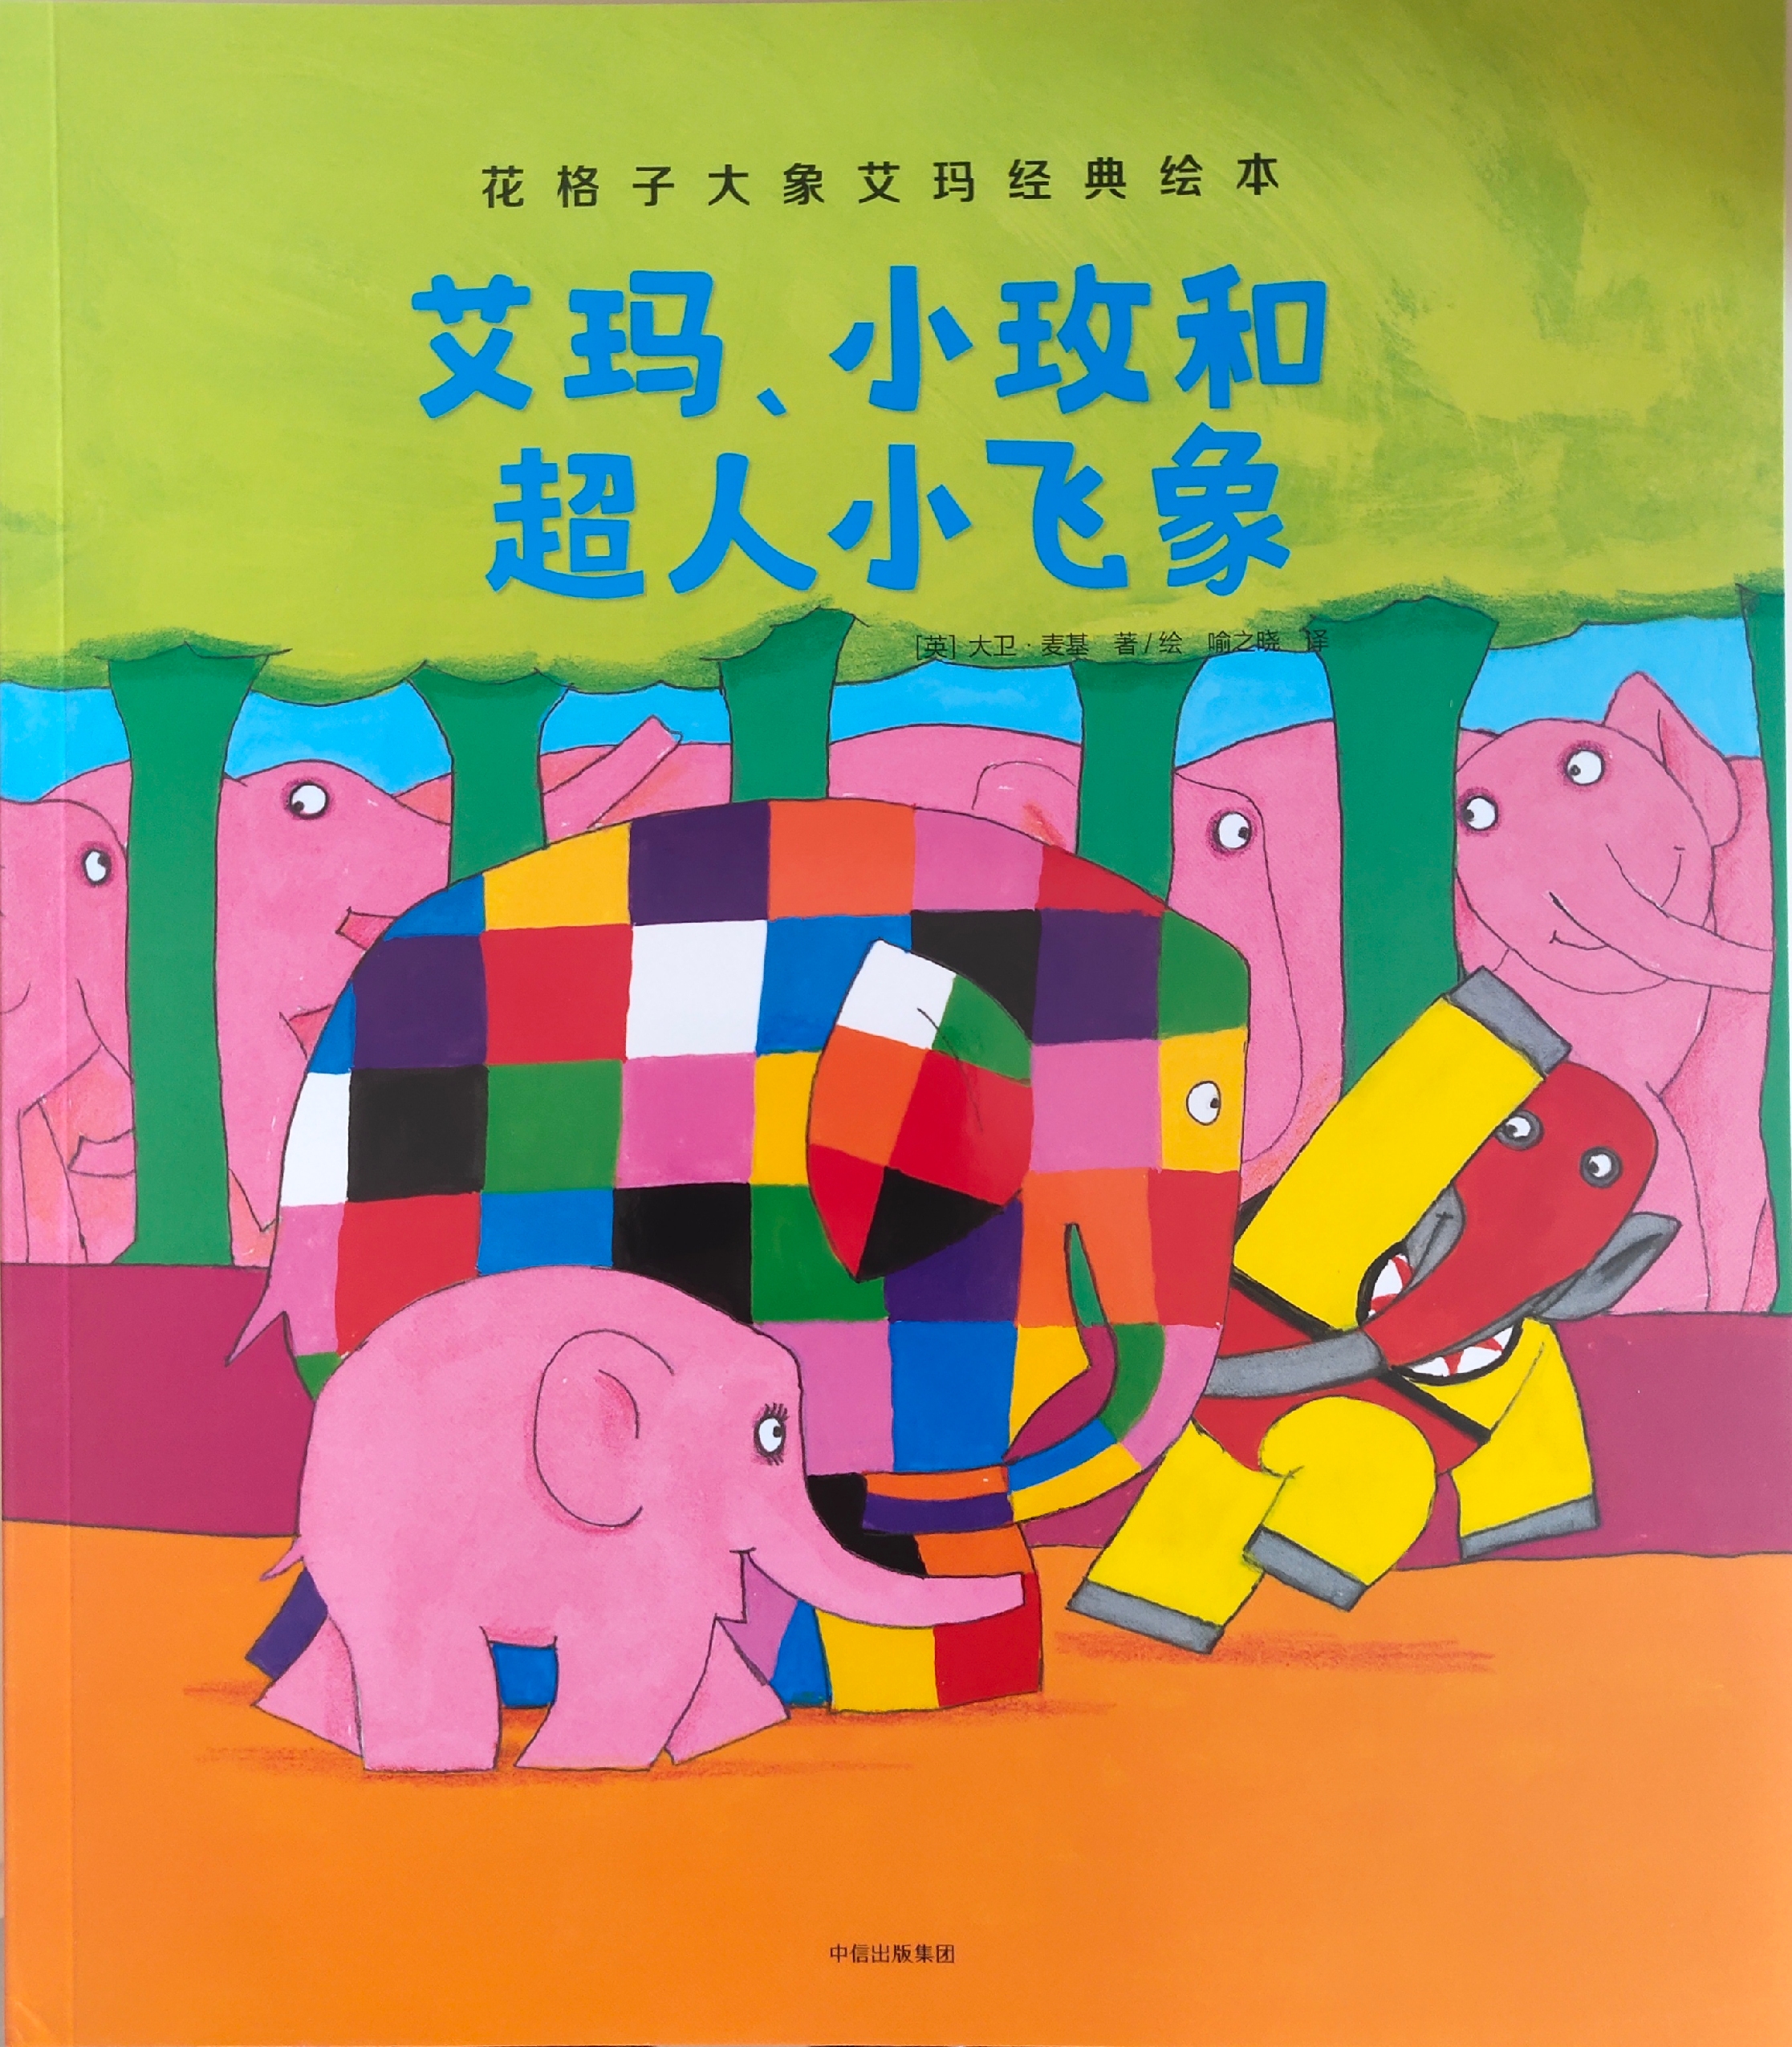 花格子大象艾玛经典绘本: 艾玛,小玫和超人小飞象